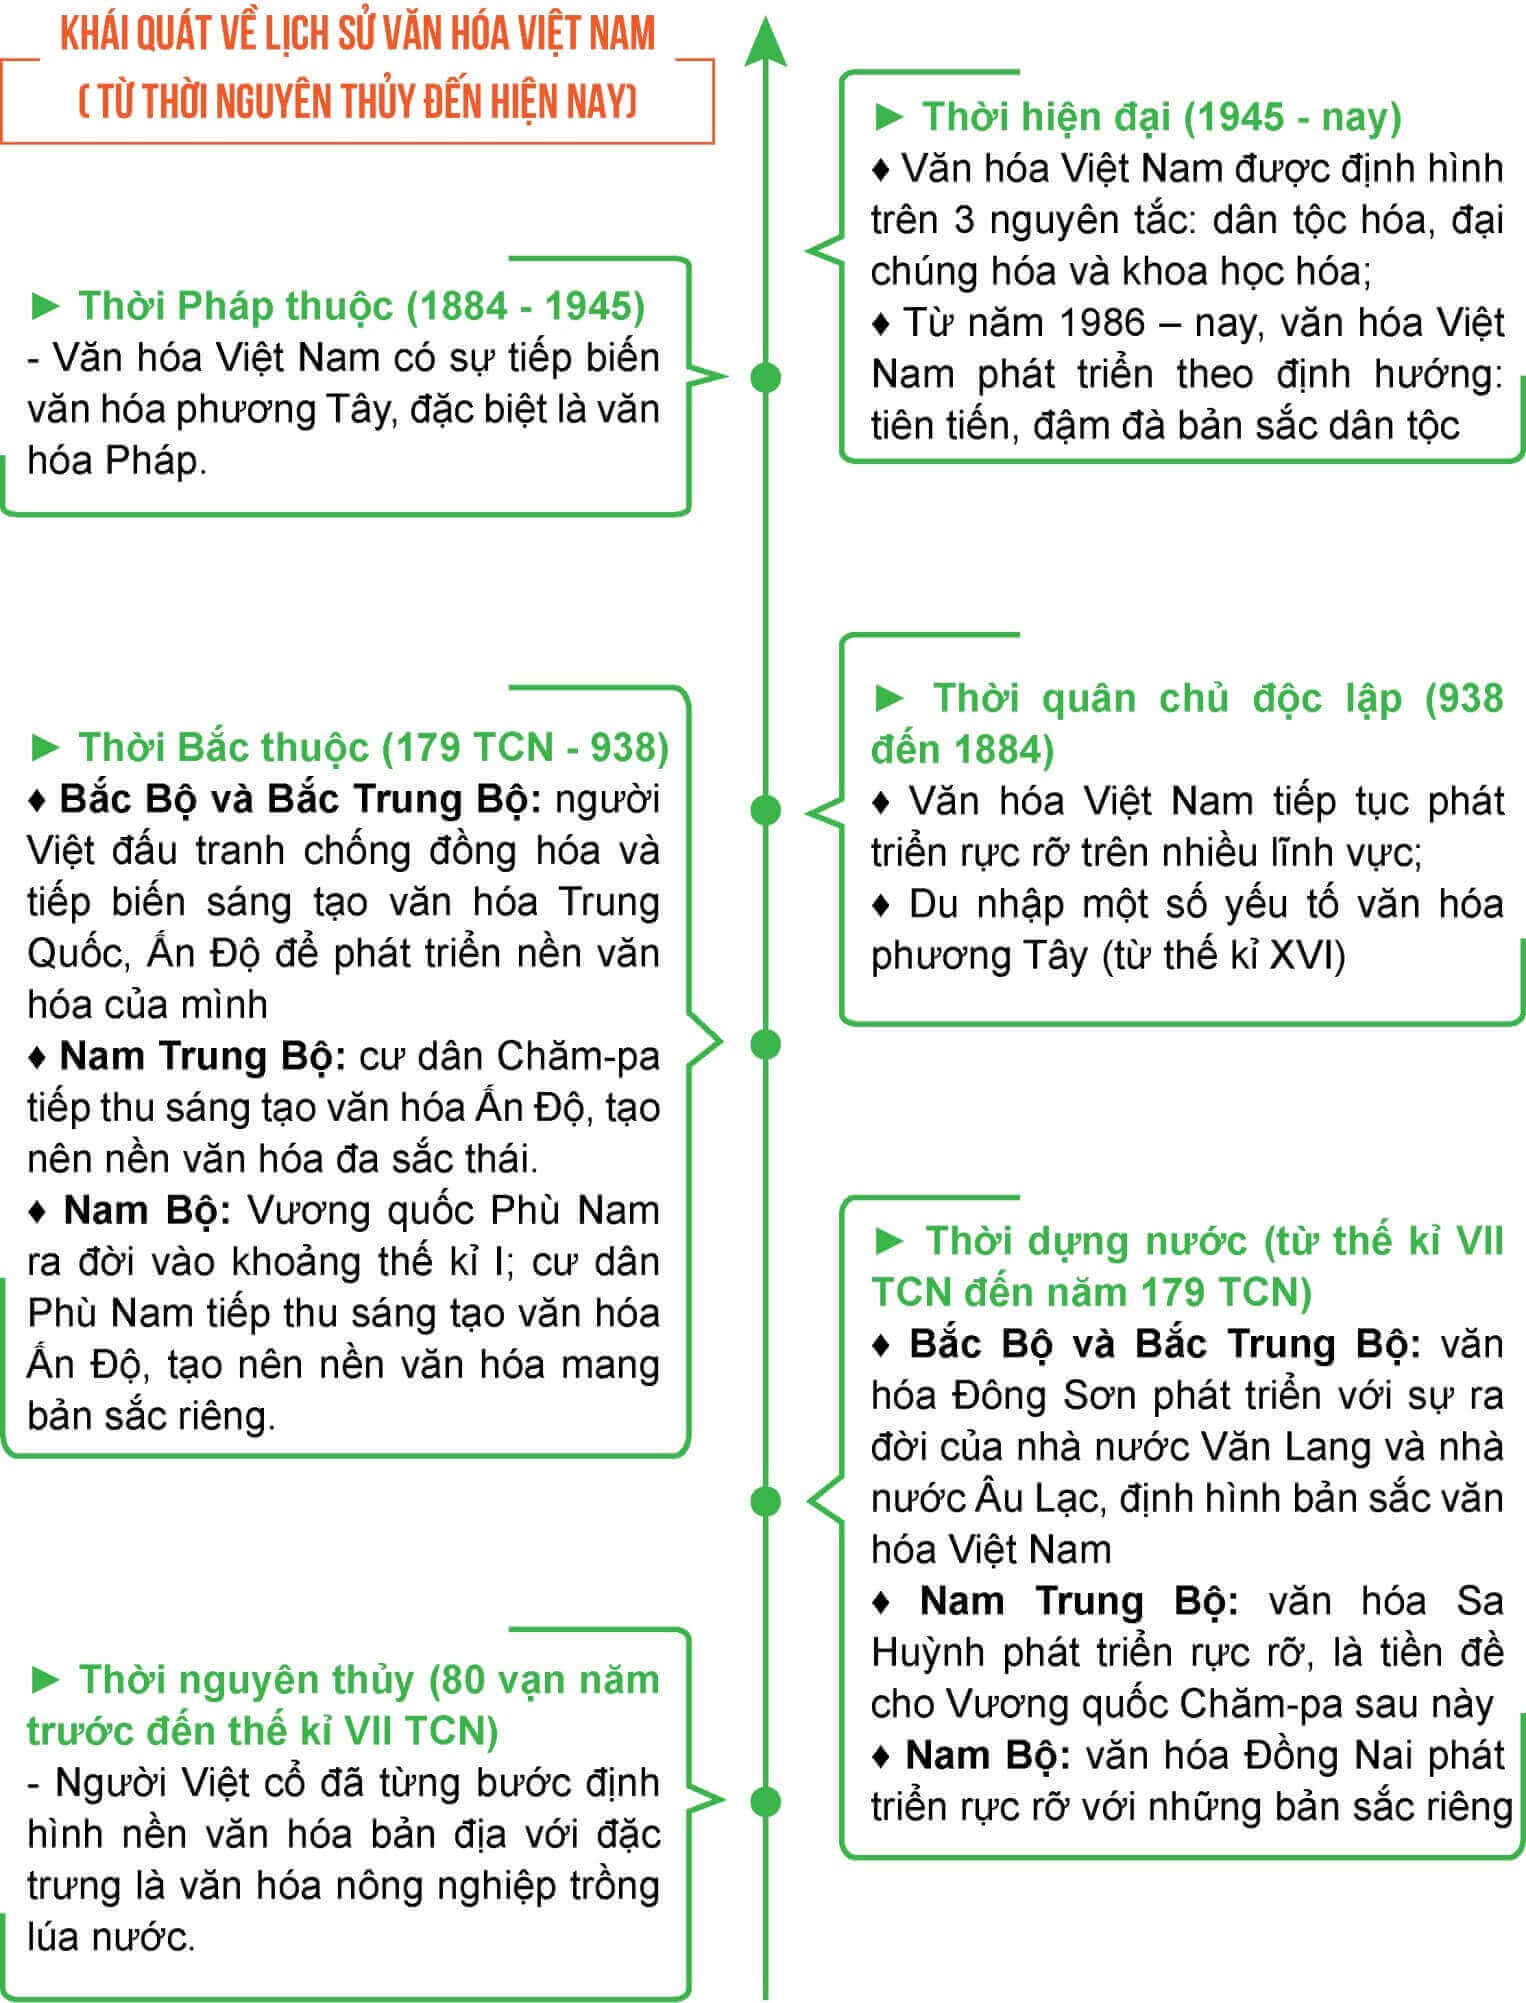 Tóm tắt những nét chính của lịch sử văn hóa Việt Nam trên trục thời gian